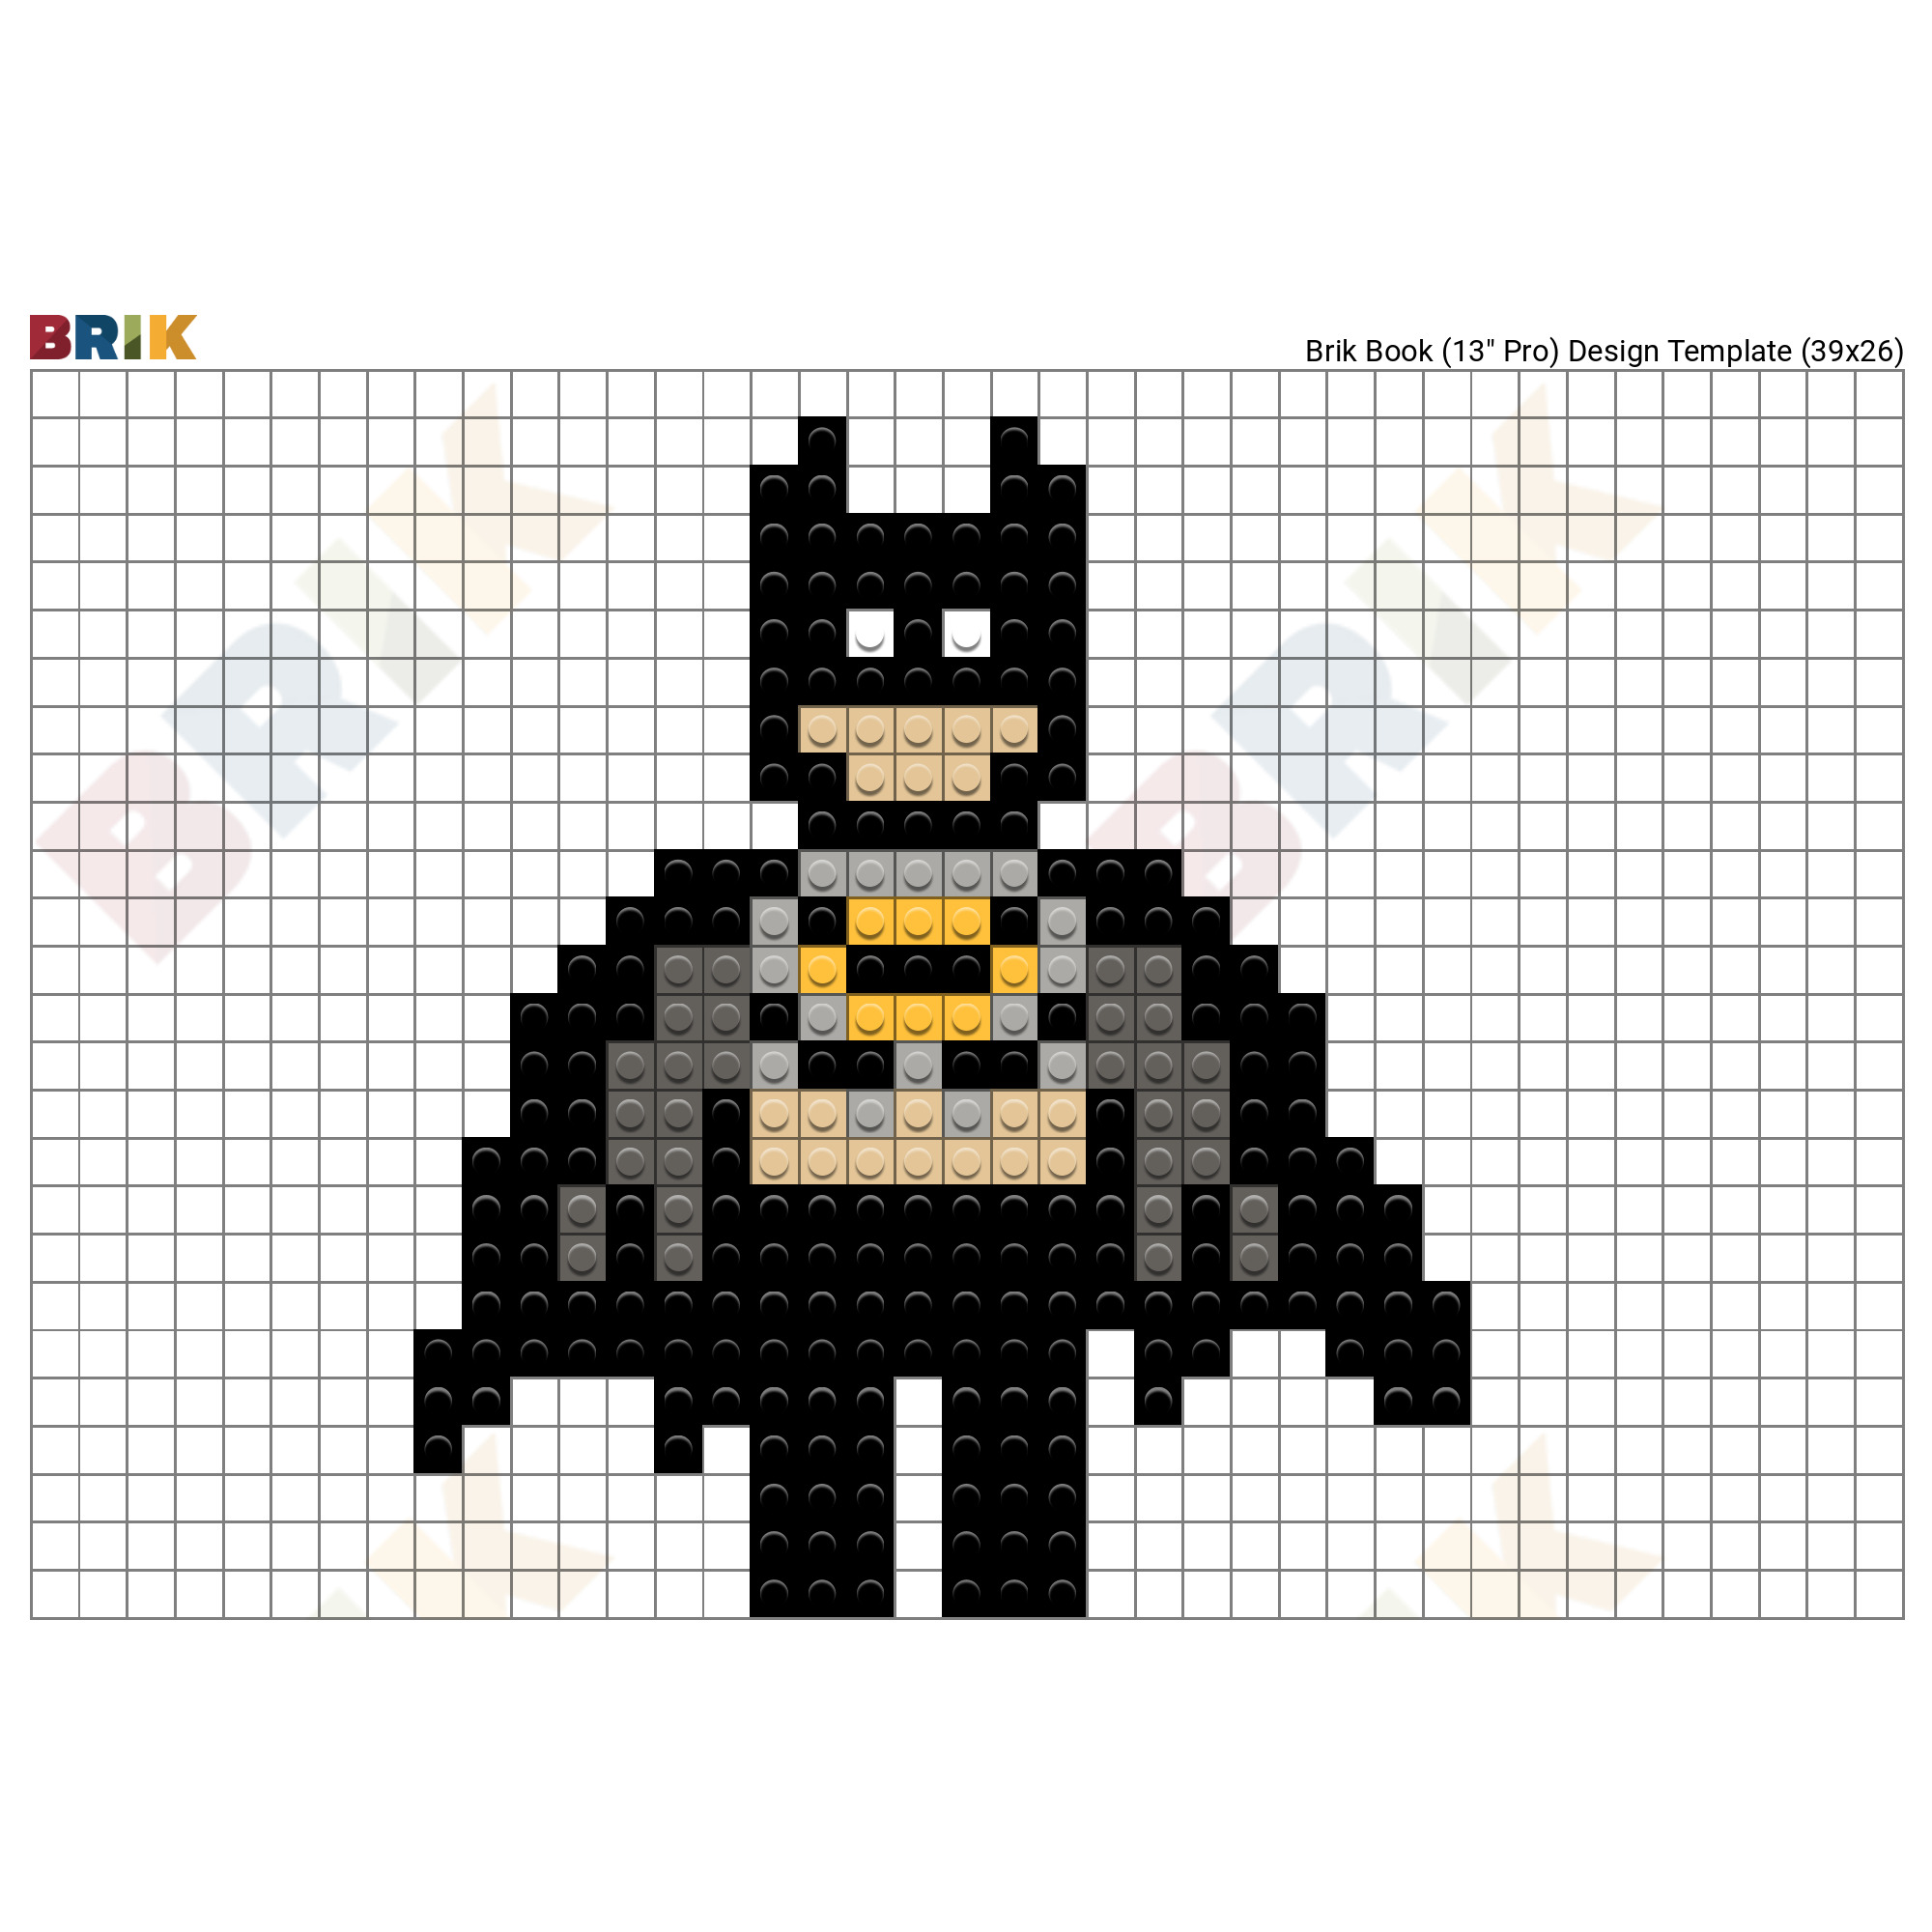 The Lego Batman Movie Pixel Art – BRIK